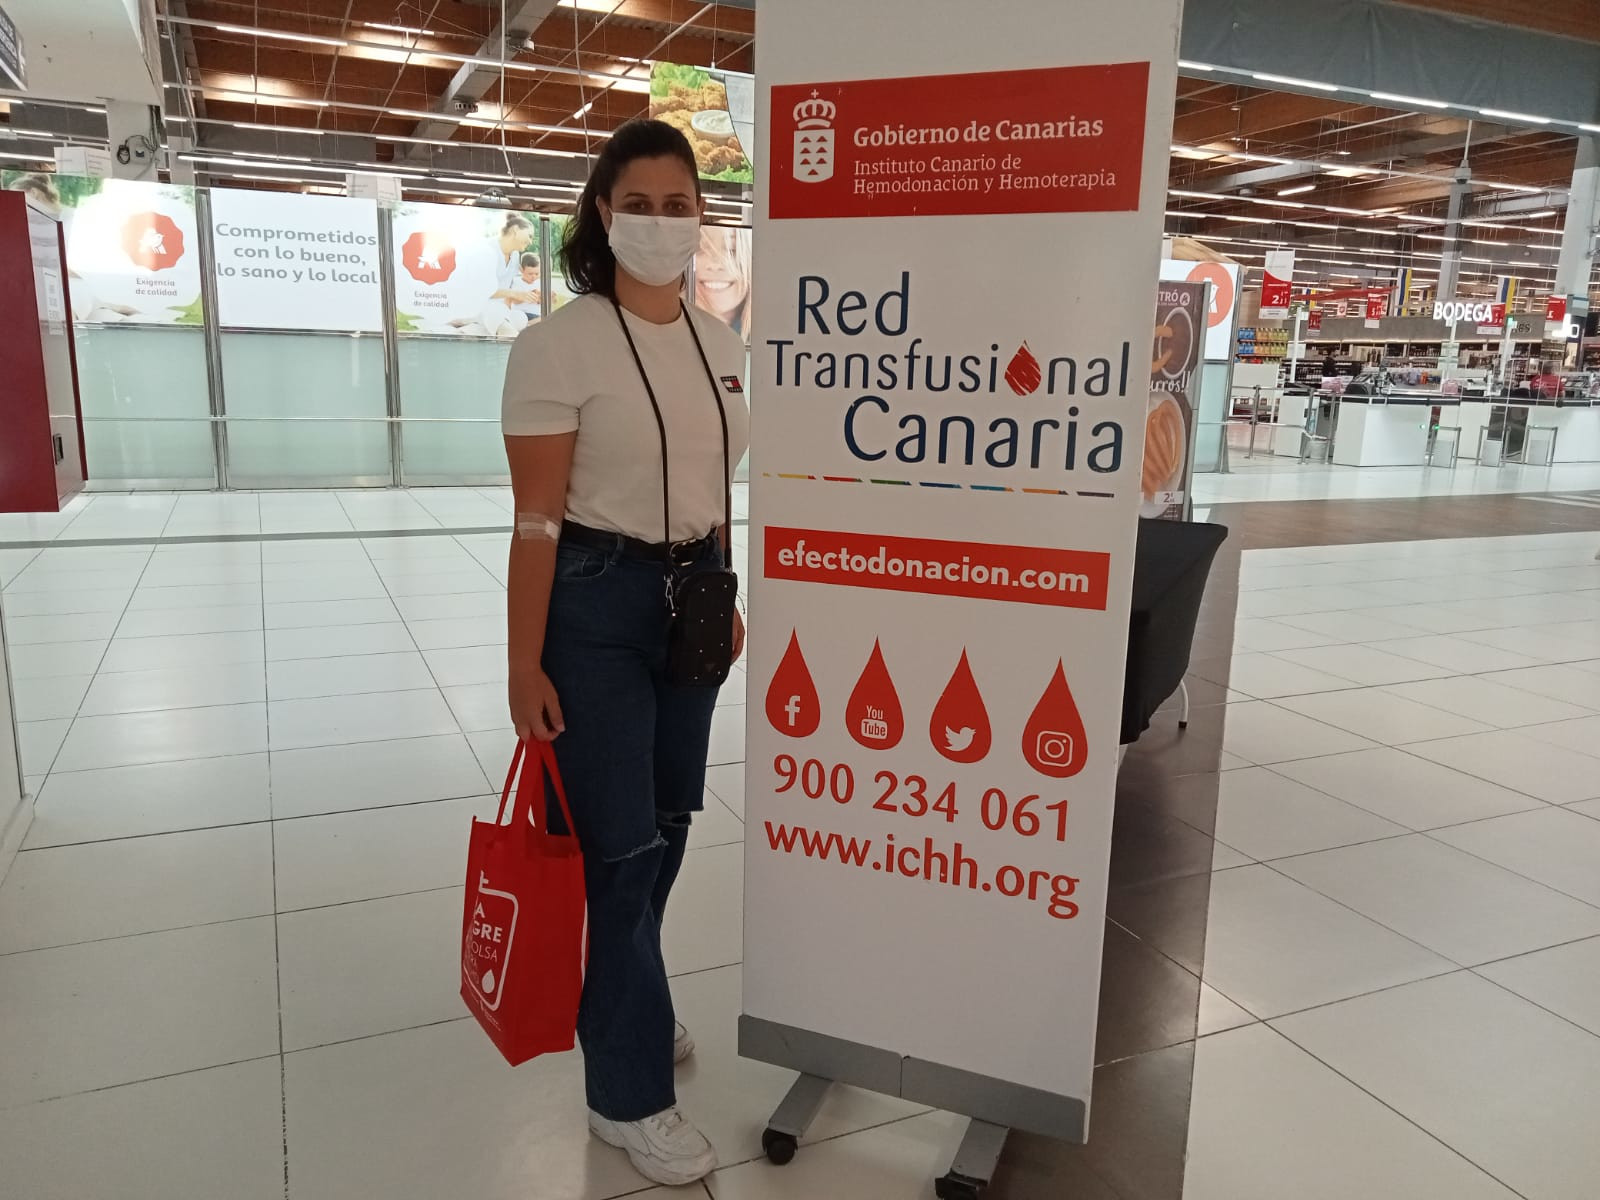 El ICHH promociona la donación de sangre en la semana del Día de Canarias